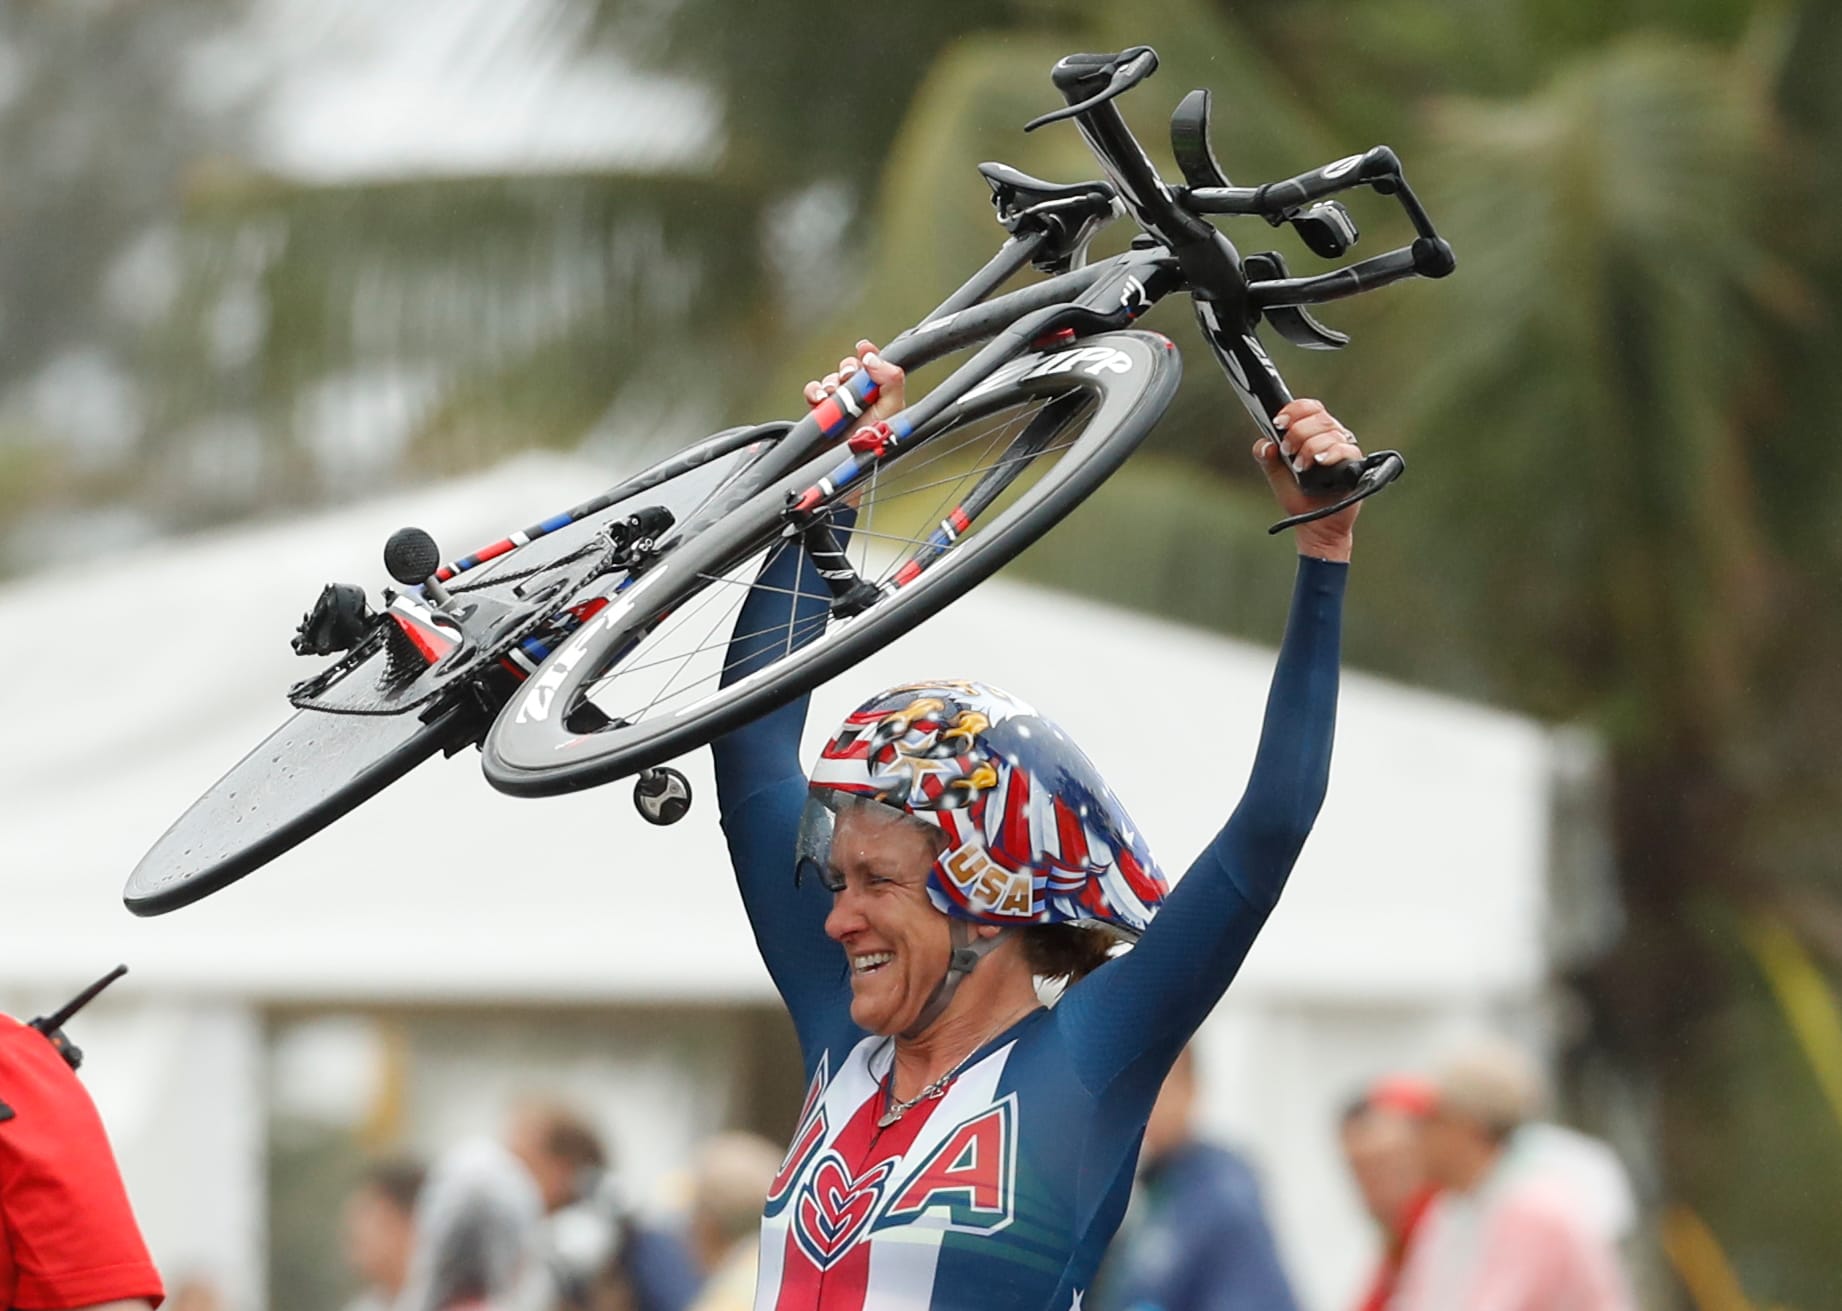 Abgehoben: Am besten kam Kristin Armstrong mit den Bedingungen zurecht. So fuhr die US-Amerikanerin zum Hattrick - ihr drittes Olympia-Gold im Zeitfahren in Serie.